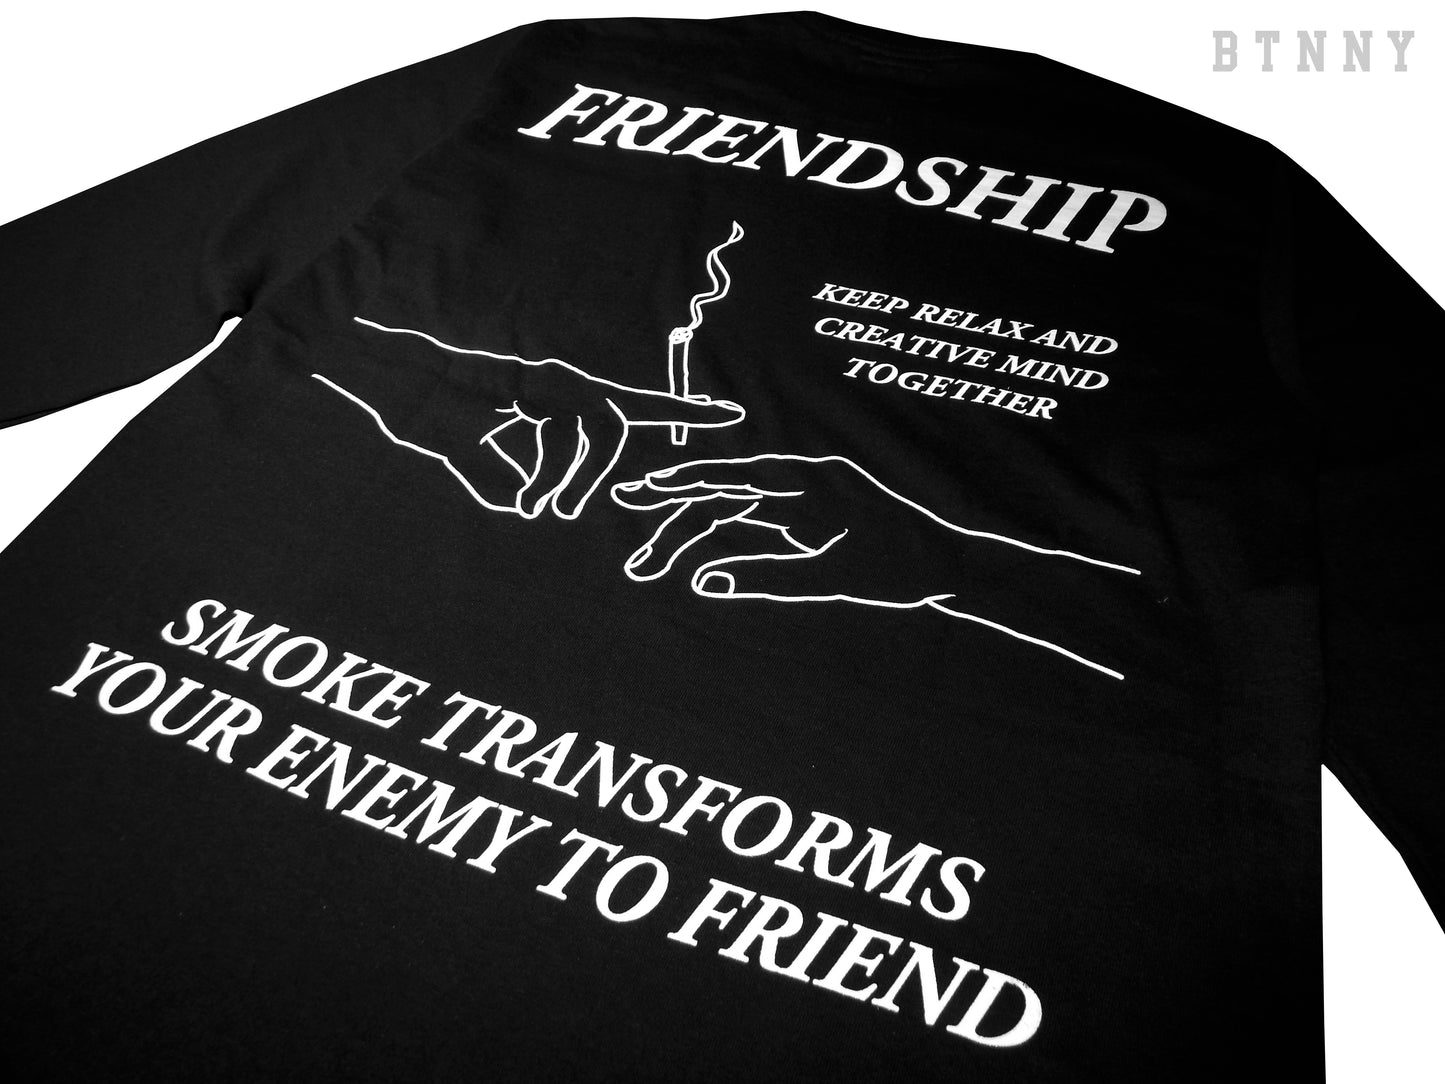 FRIENDSHIP L/S T-Shirts